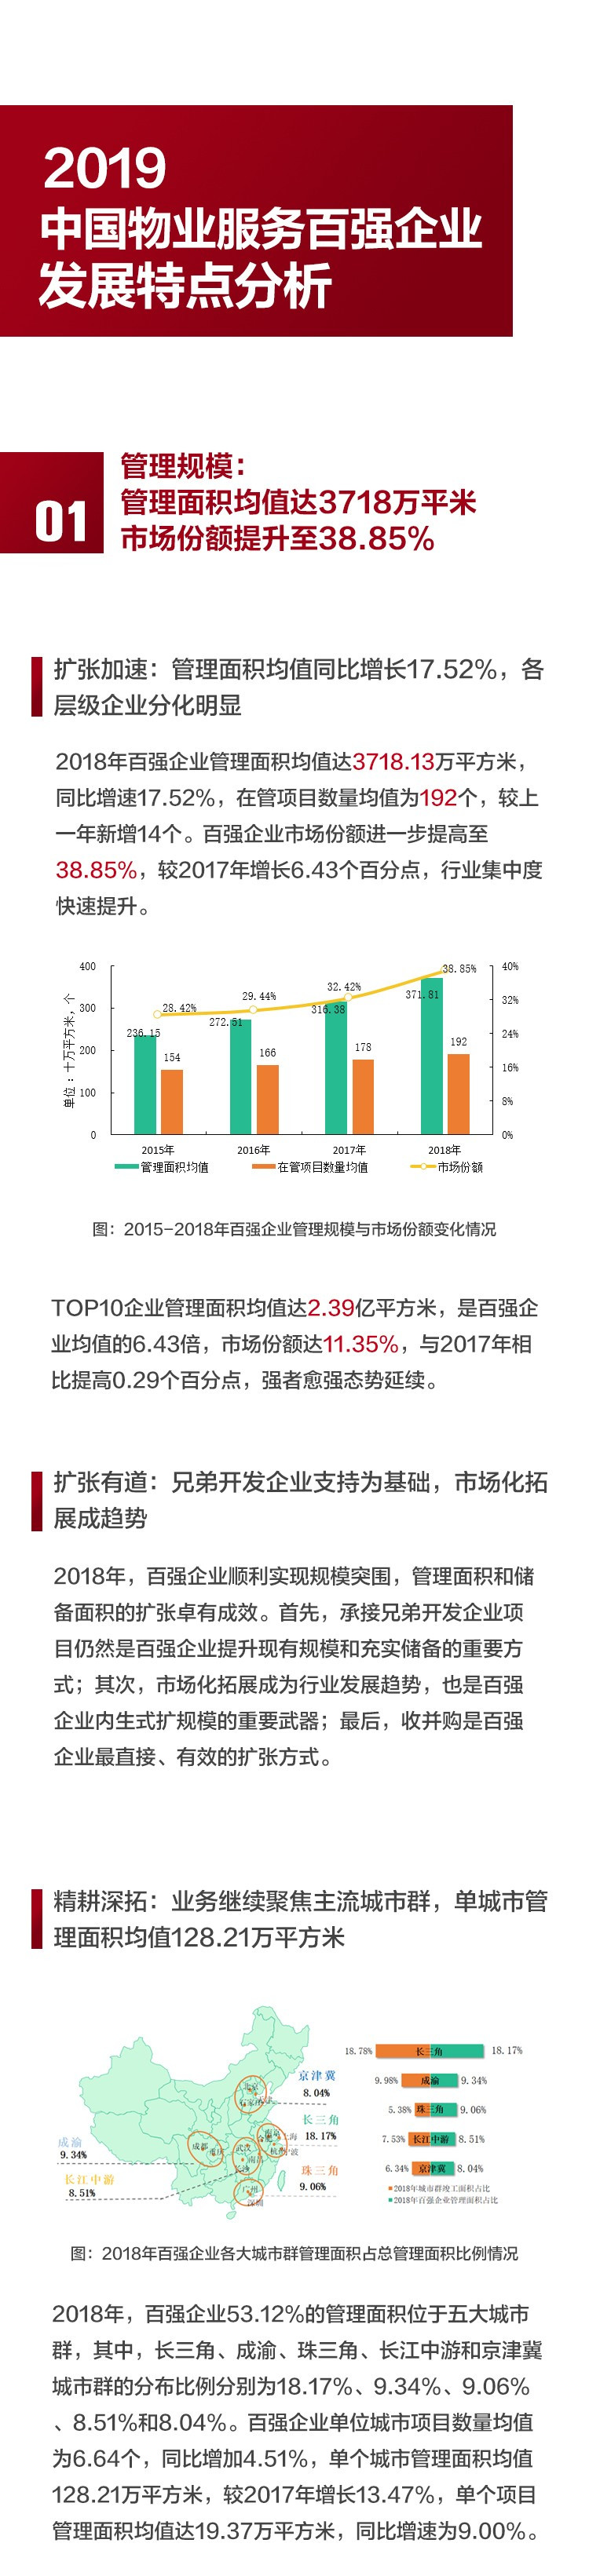 2019中国物业服务百强企业排行榜重磅发布